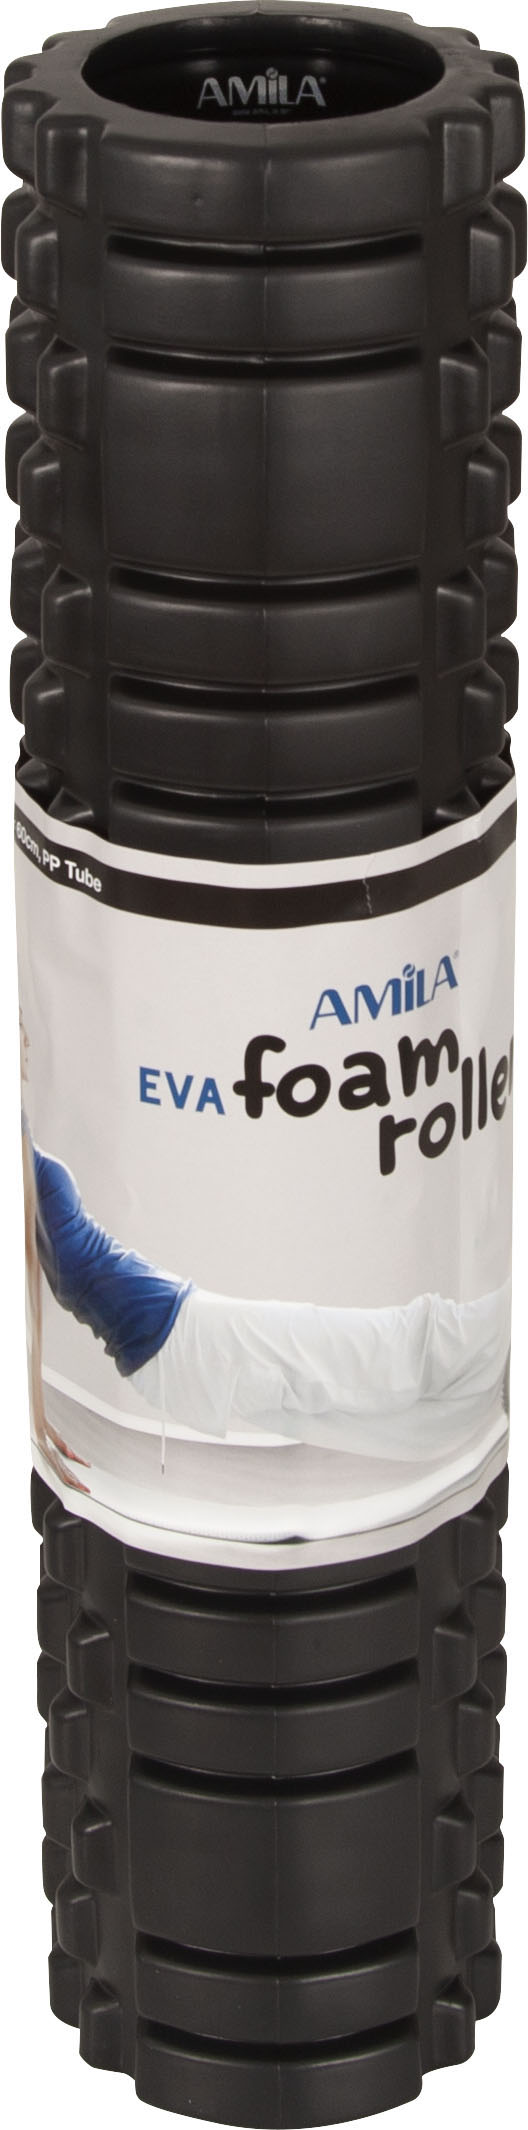 AMILA Foam Roller Φ14x60cm